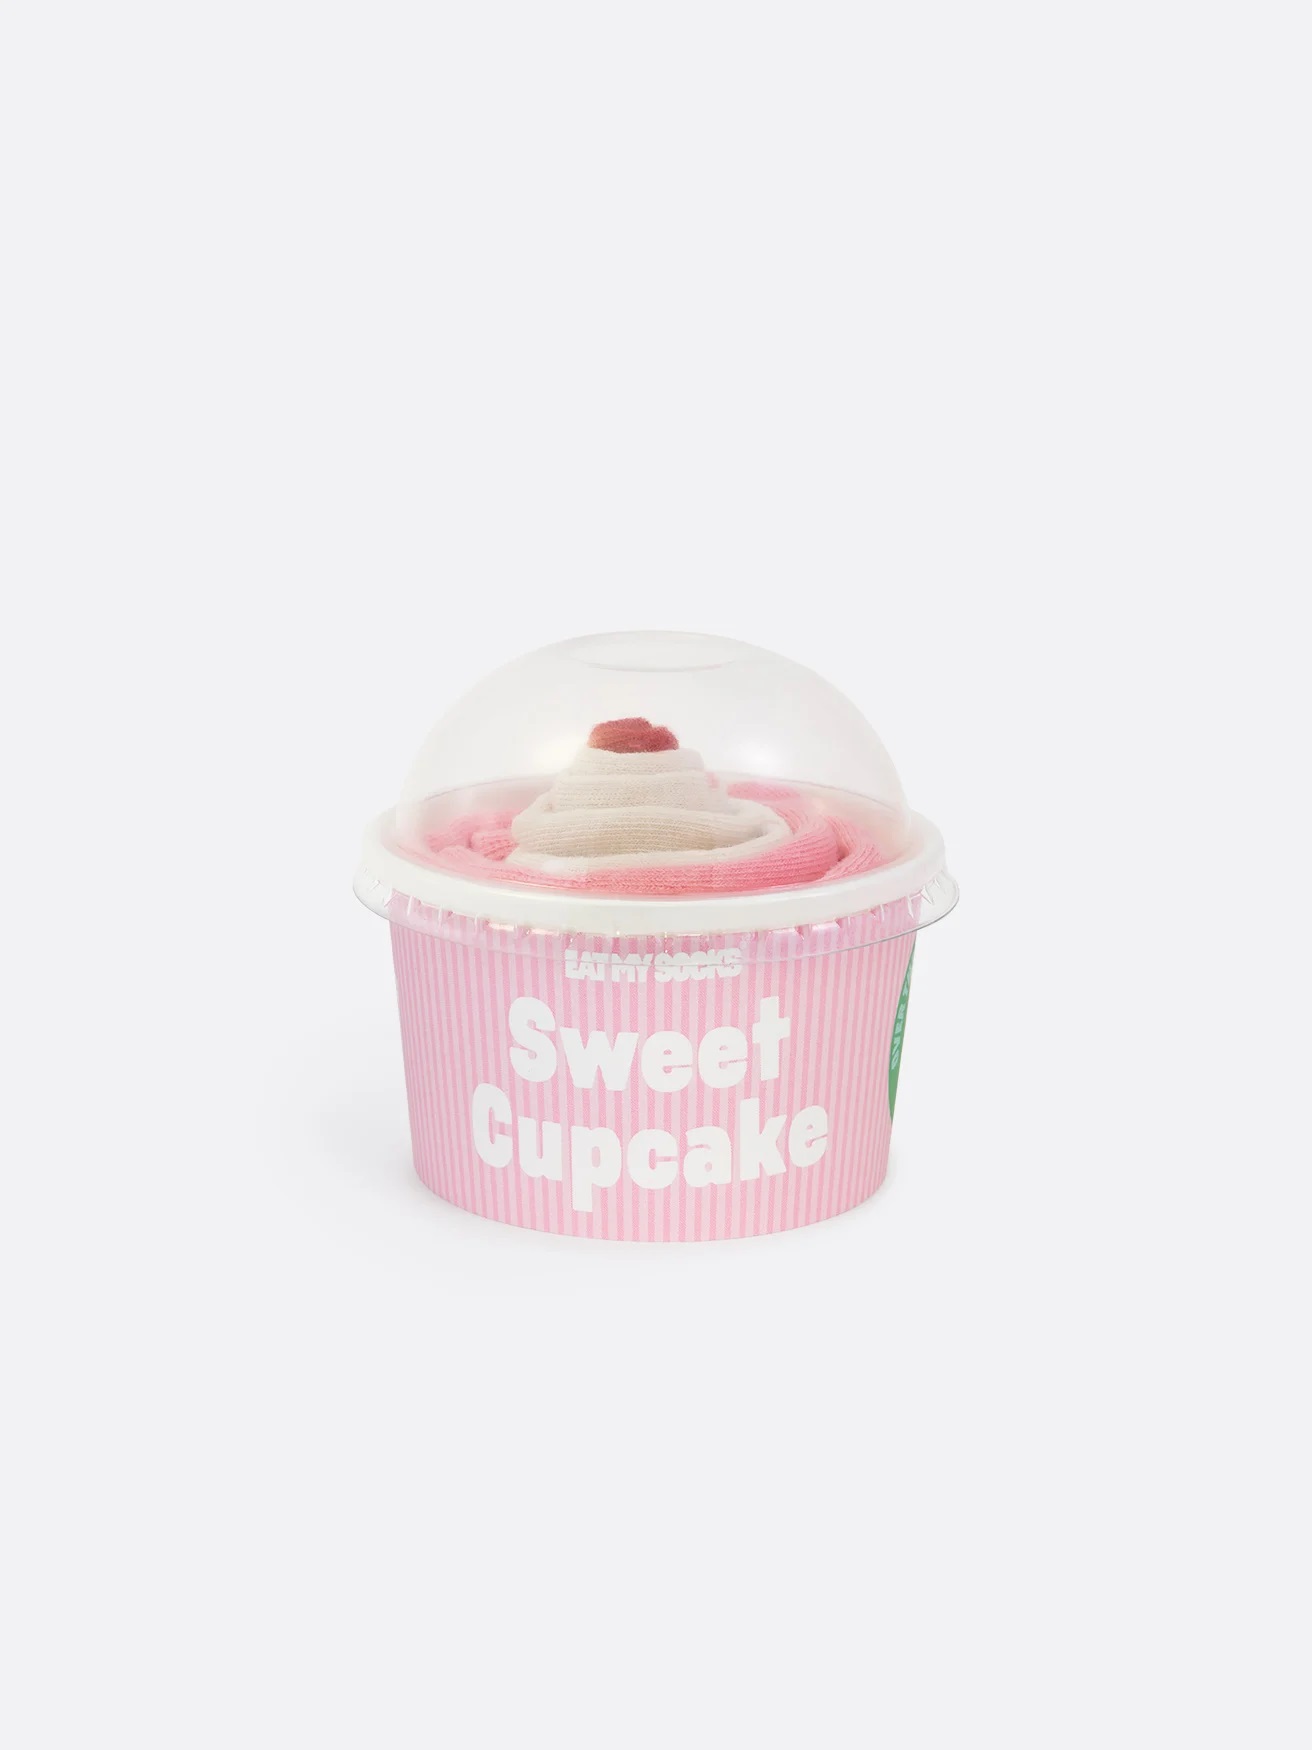 Strømper - Strawberry Cupcake - EAT MY SOCKS - Olde A - Livsstil med karakter